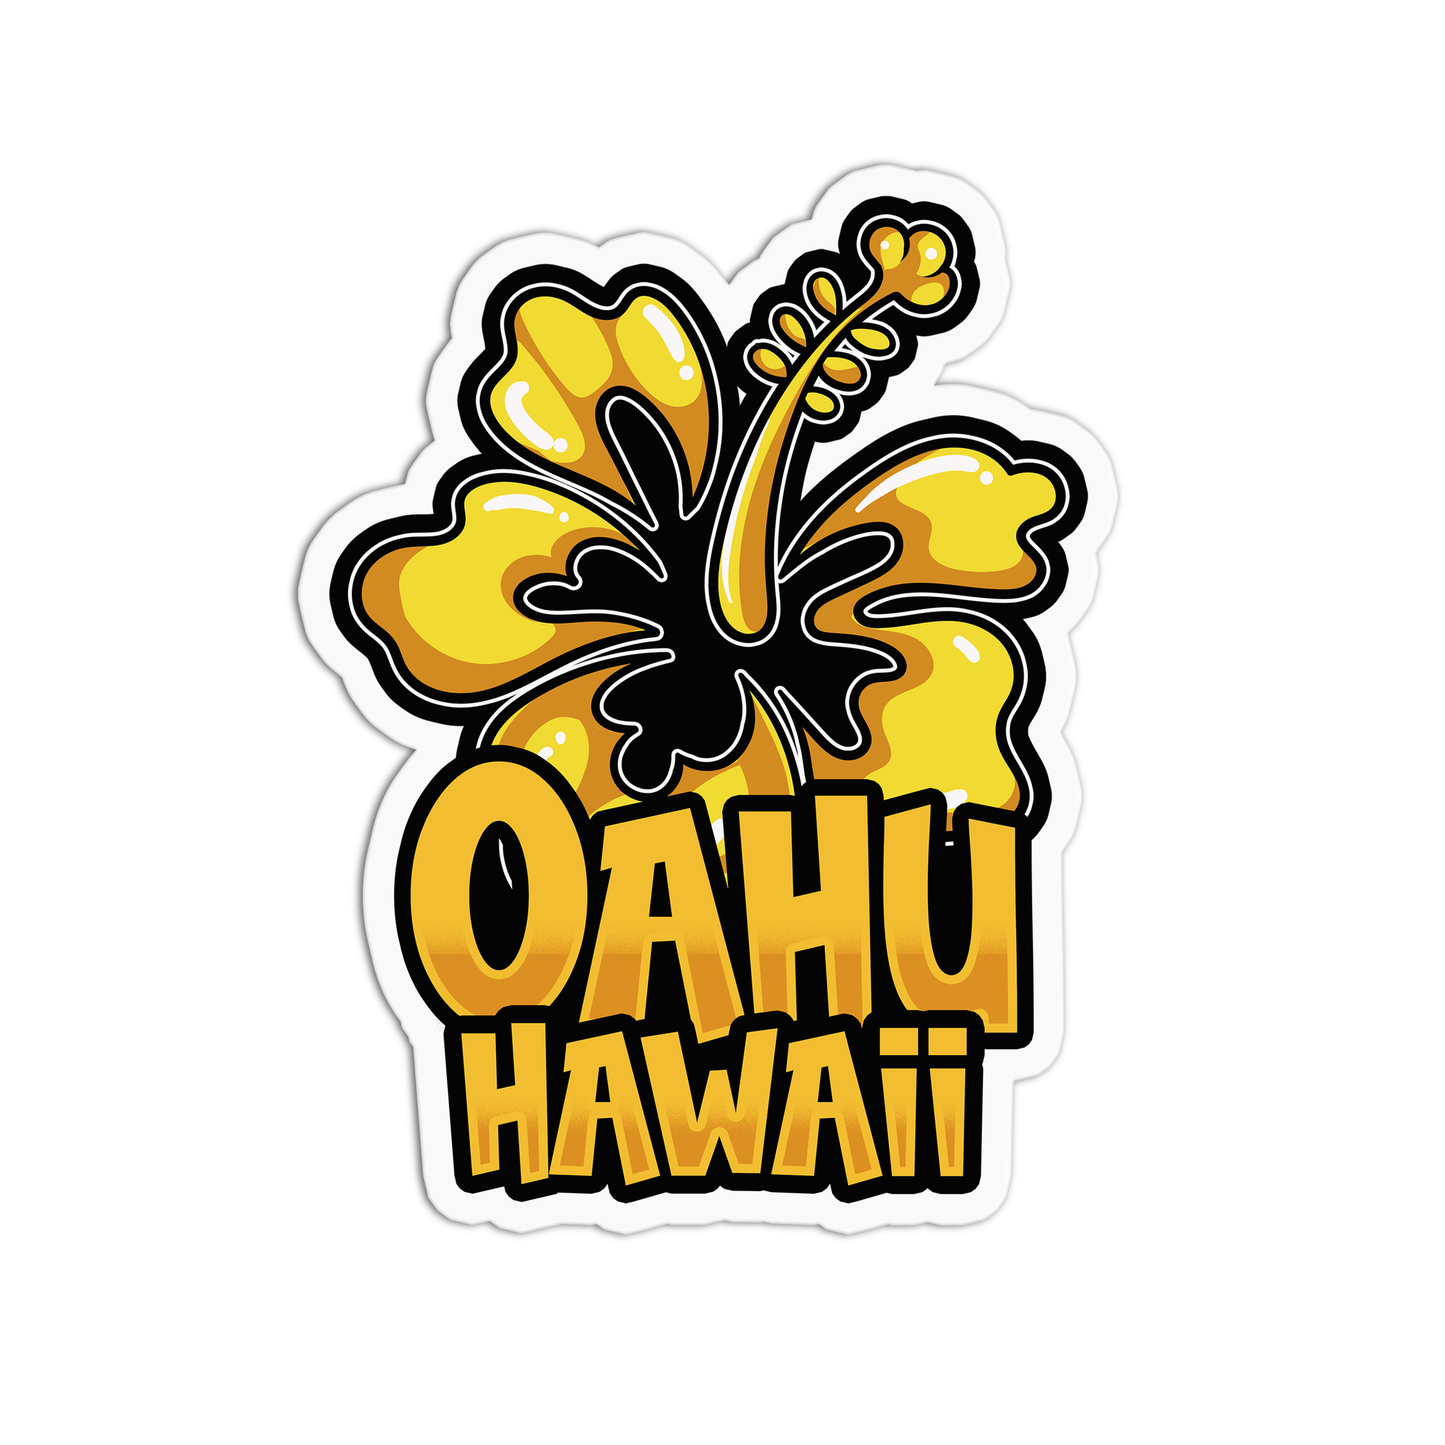 Oahu Hawaii Stickers